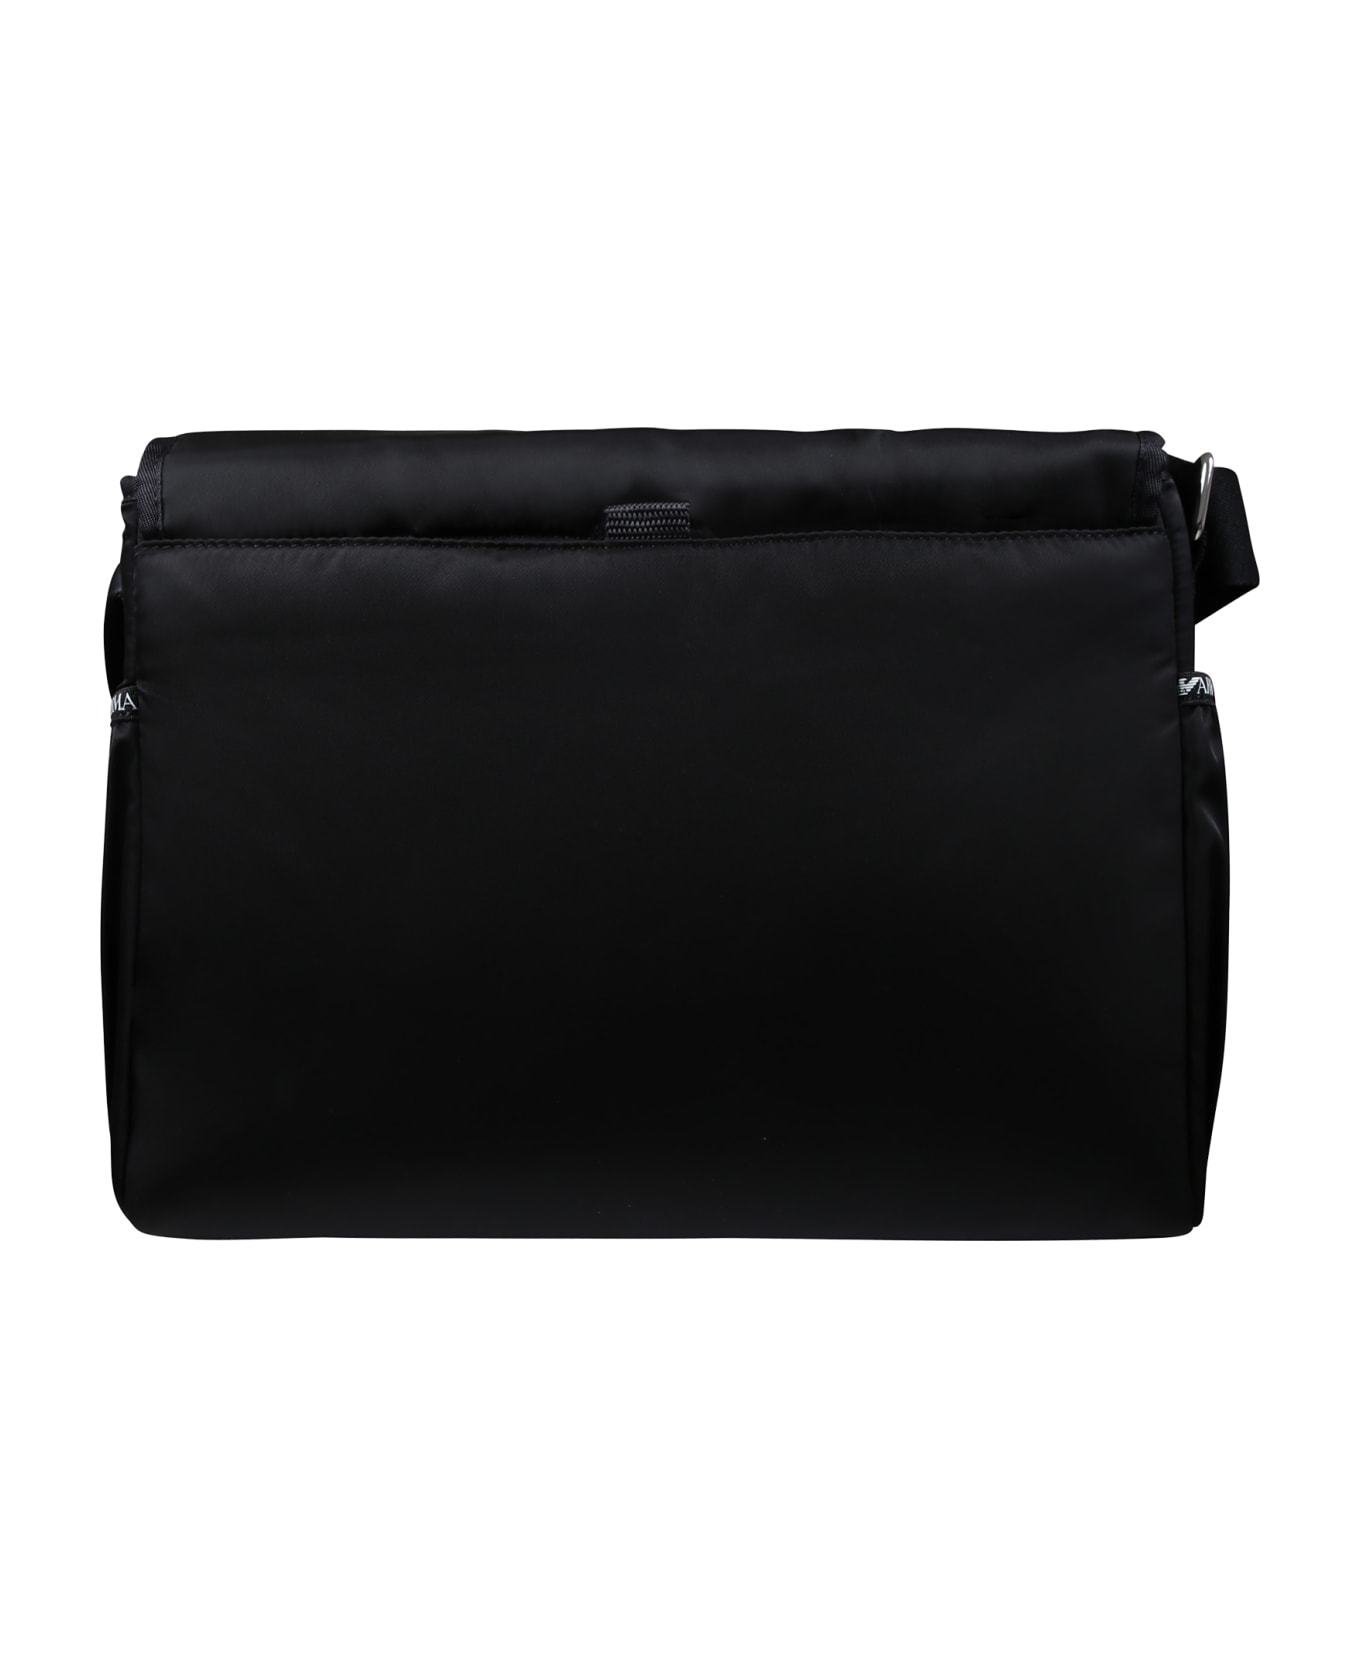 Emporio Armani Black Mum Bag For Babykids With Logo - Black アクセサリー＆ギフト